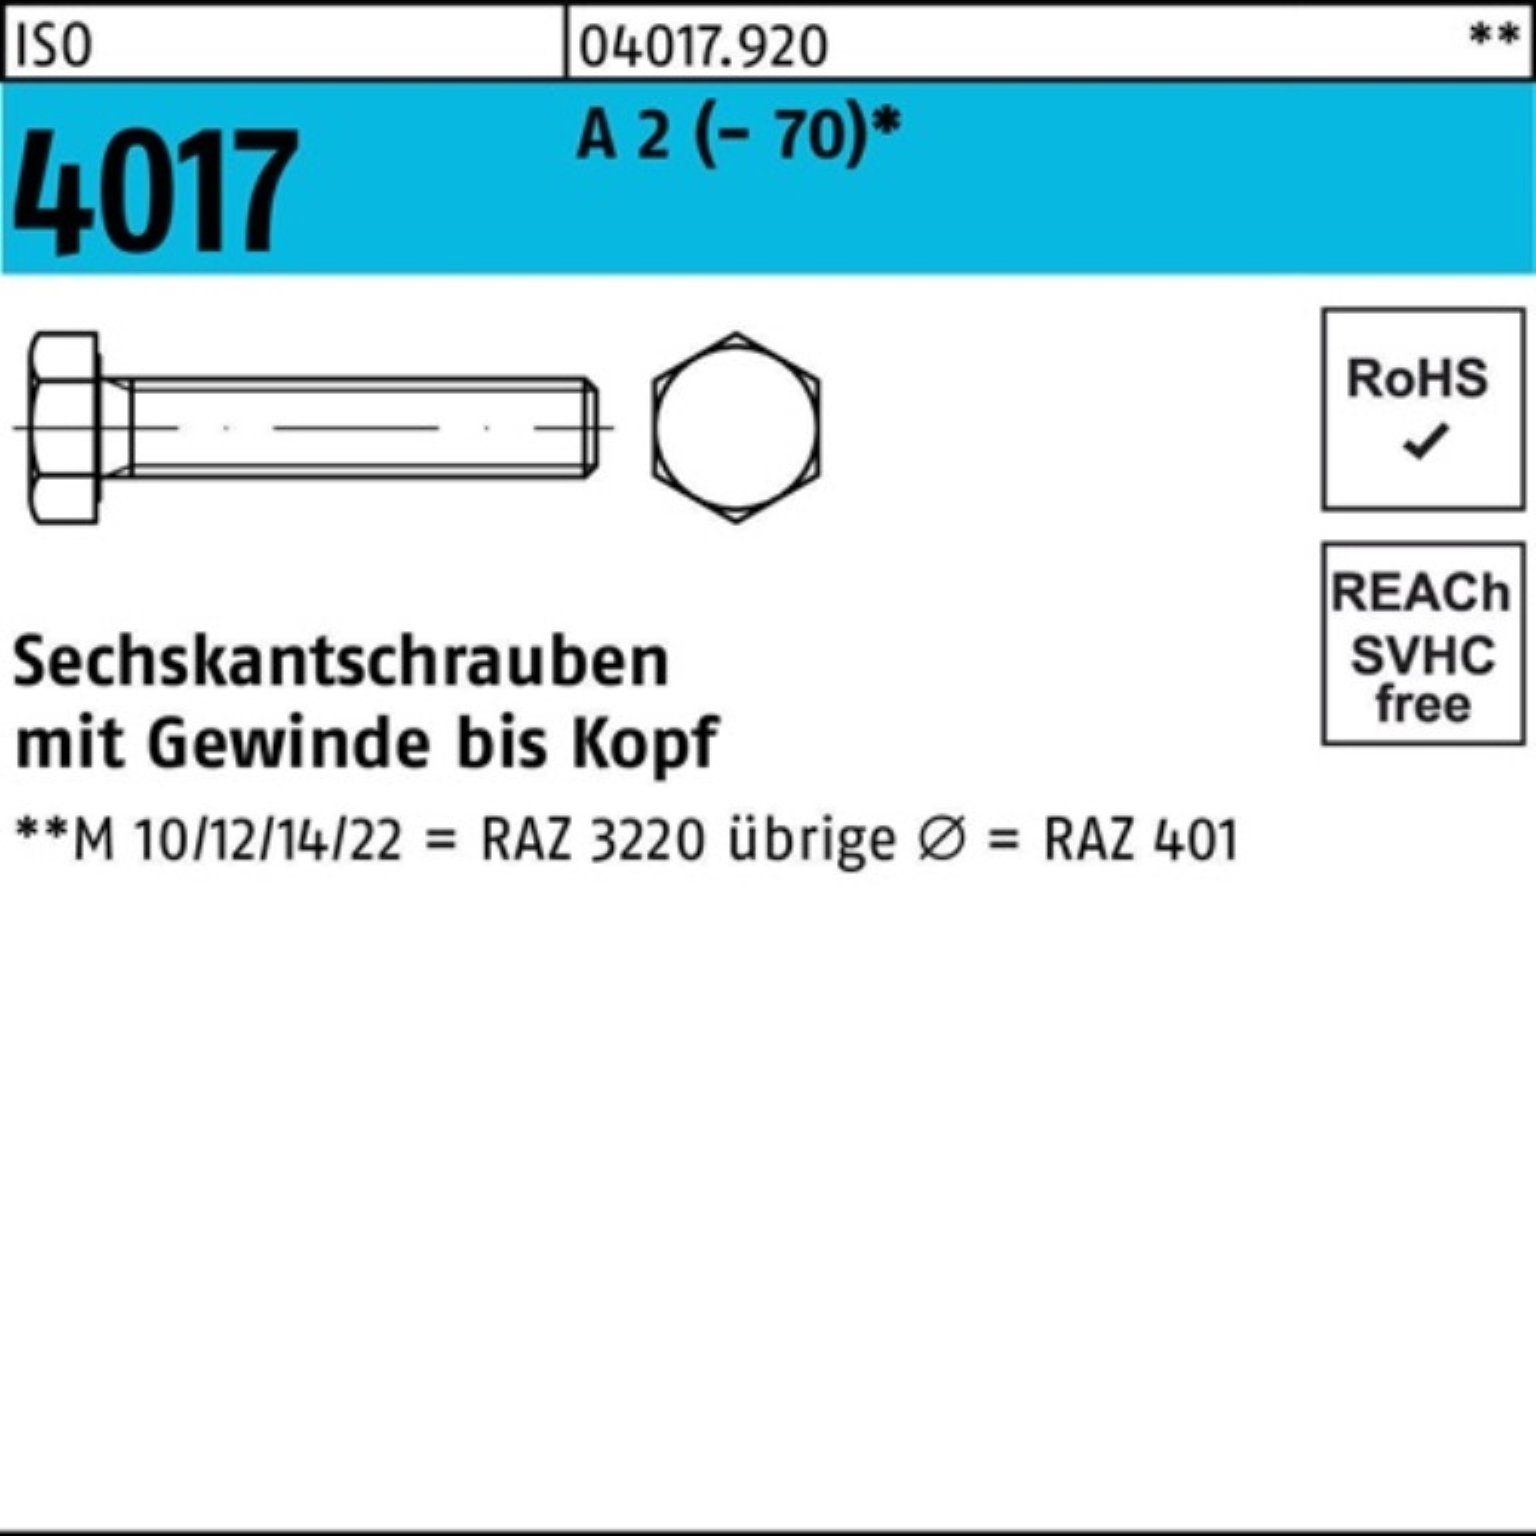 Bufab Sechskantschraube 100er Pack Sechskantschraube ISO 4017 VG M12x 45 A 2 (70) 100 Stück